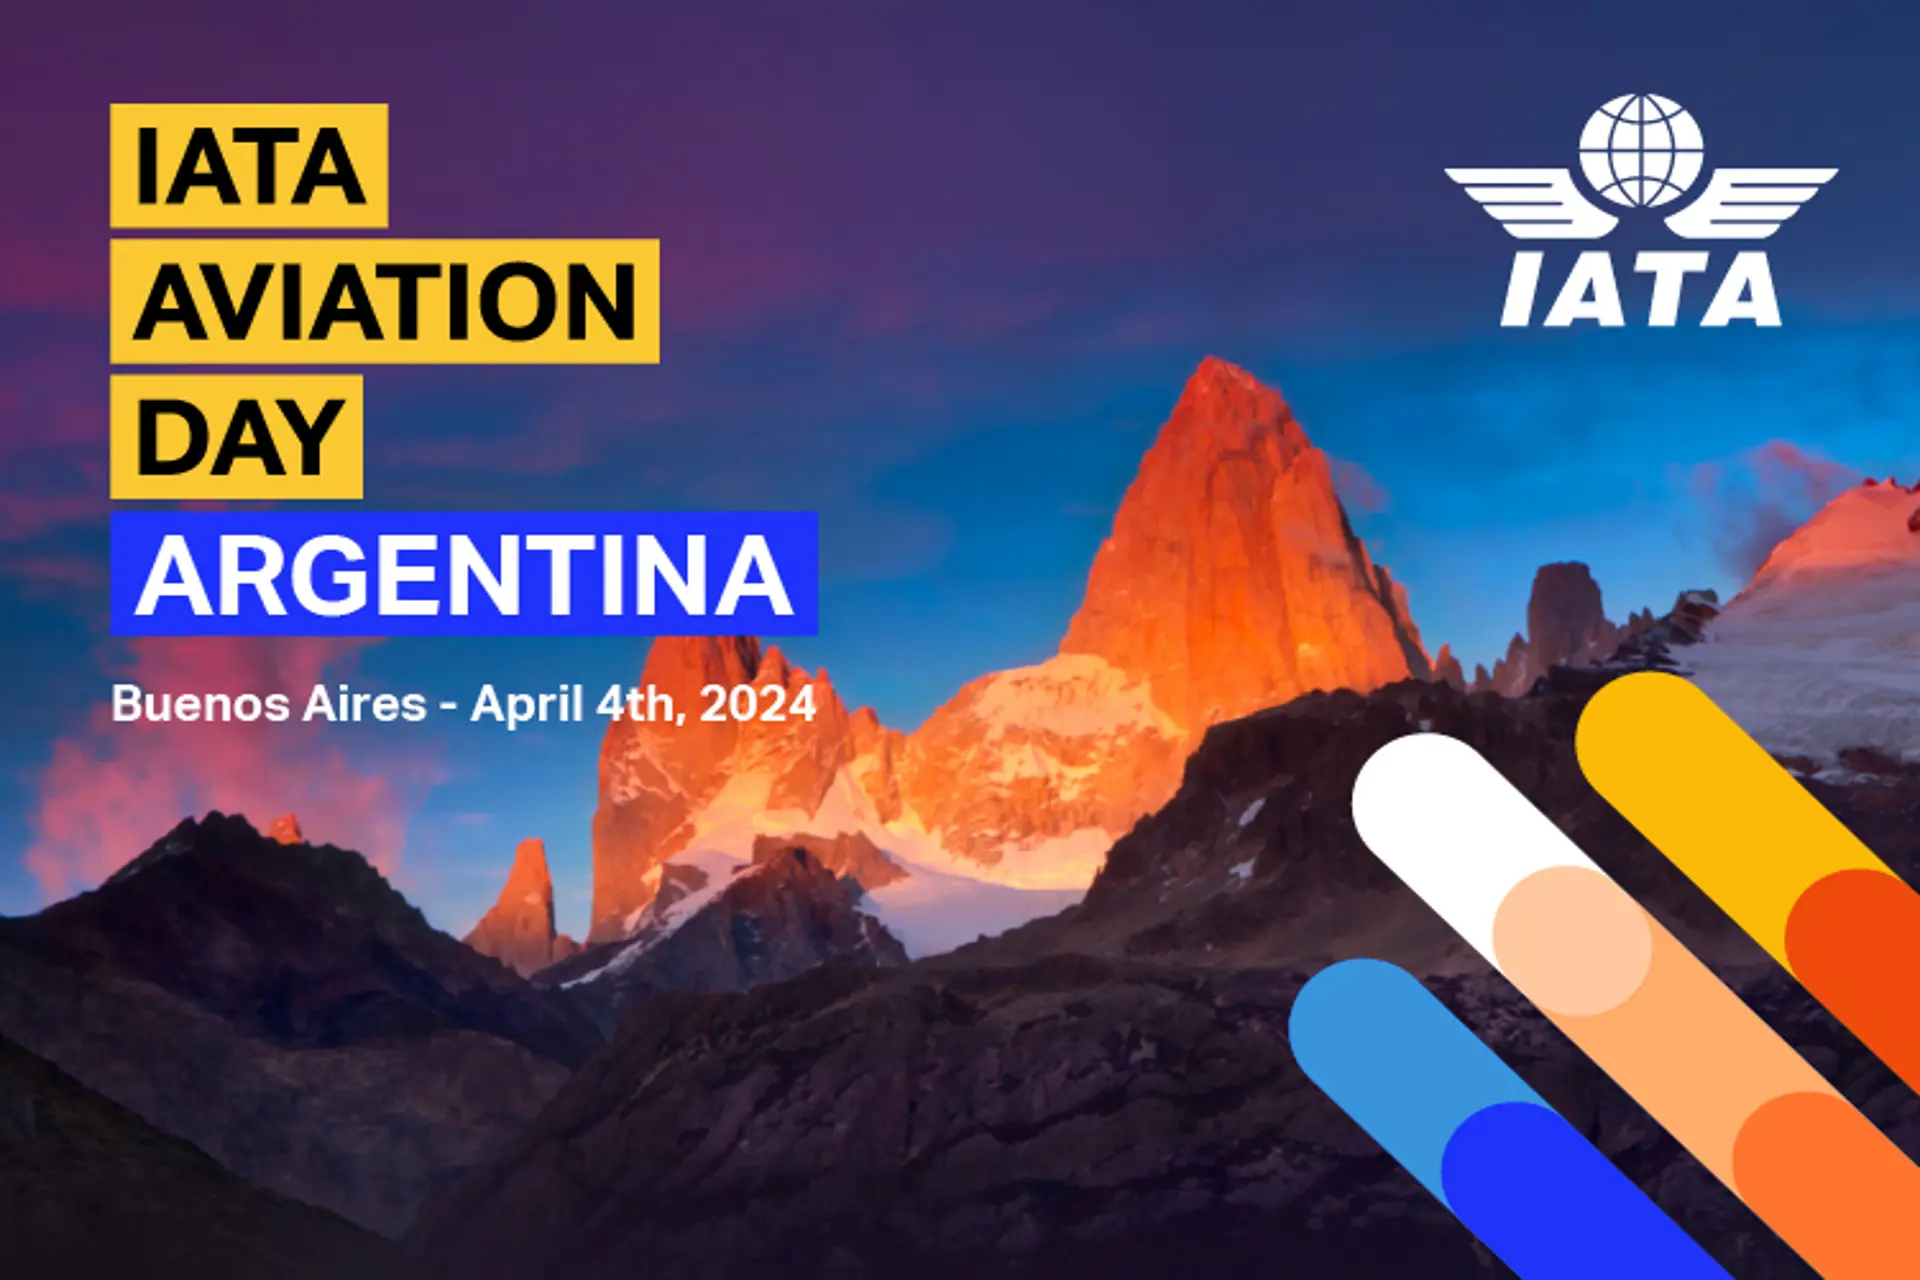 Vuelve el IATA Aviation Day a la Argentina